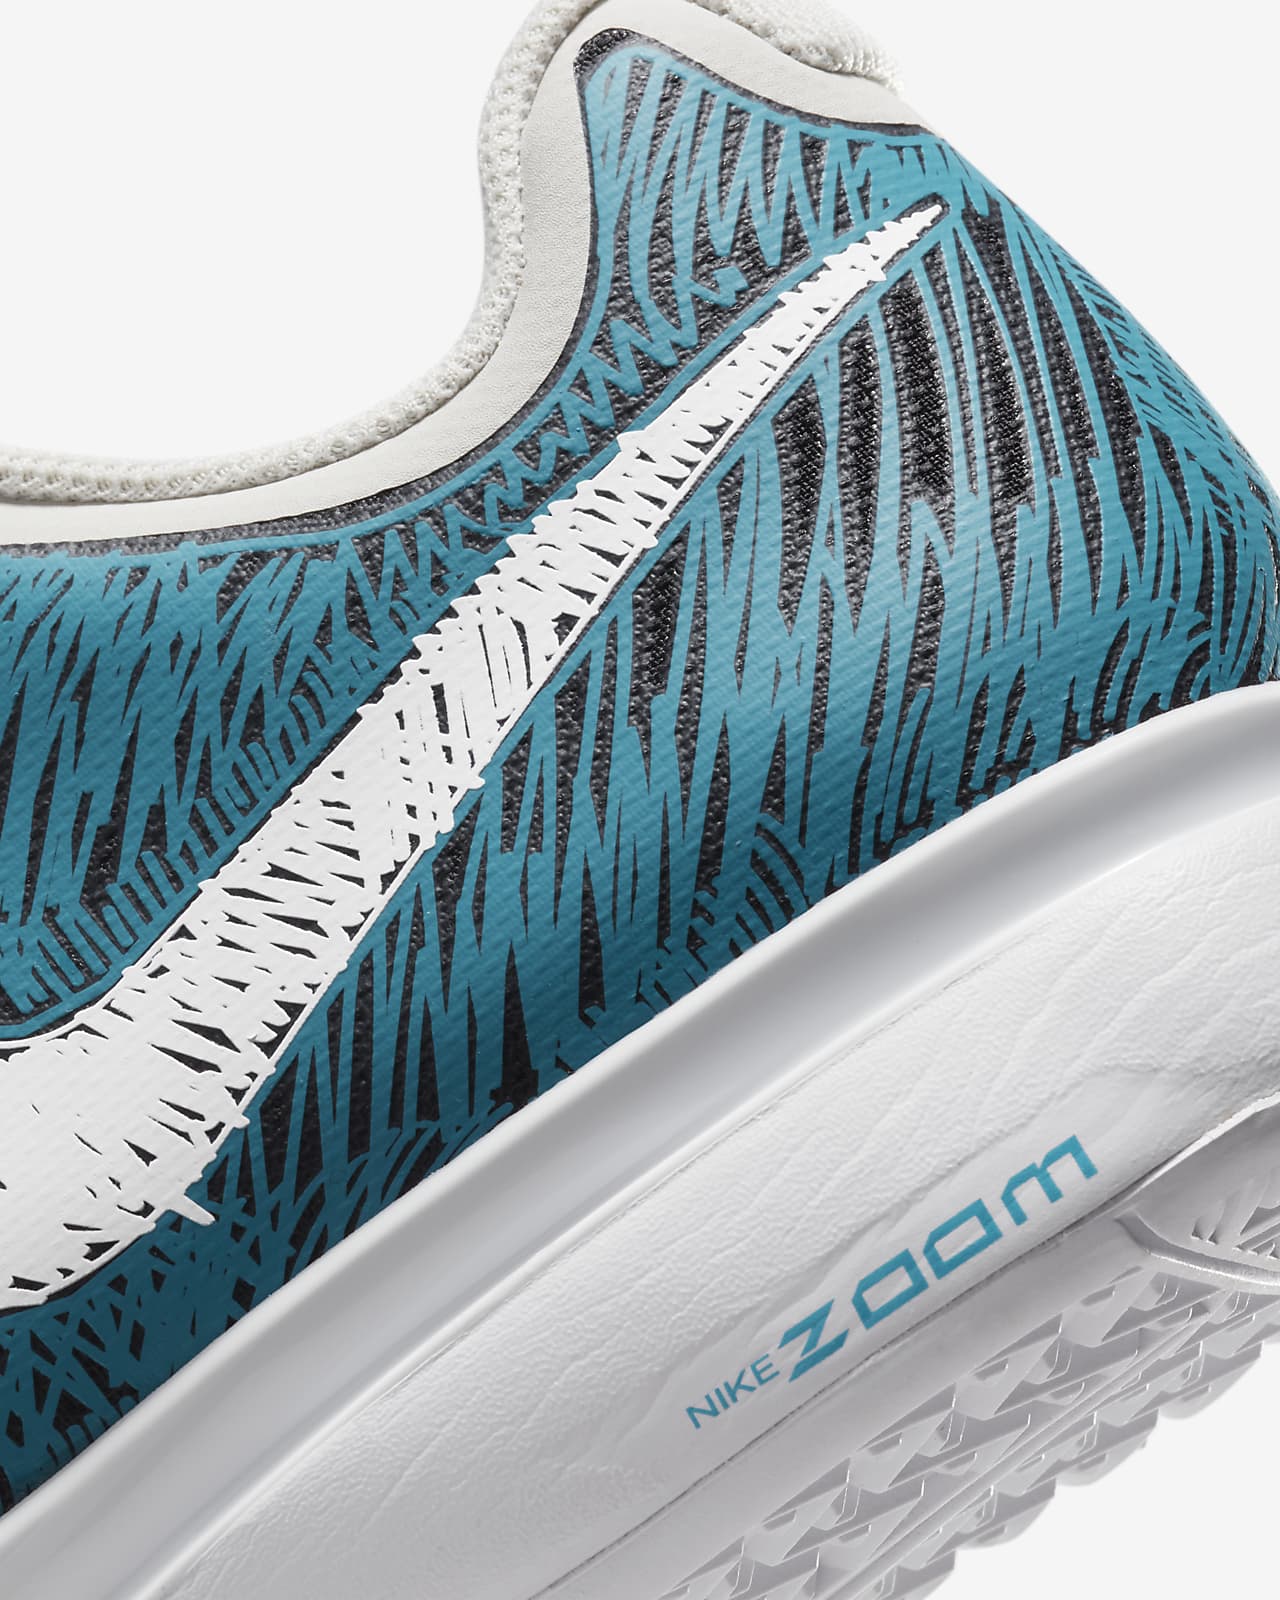 Calzado de tenis para hombre Zoom Vapor 9.5 Tour Premium. Nike